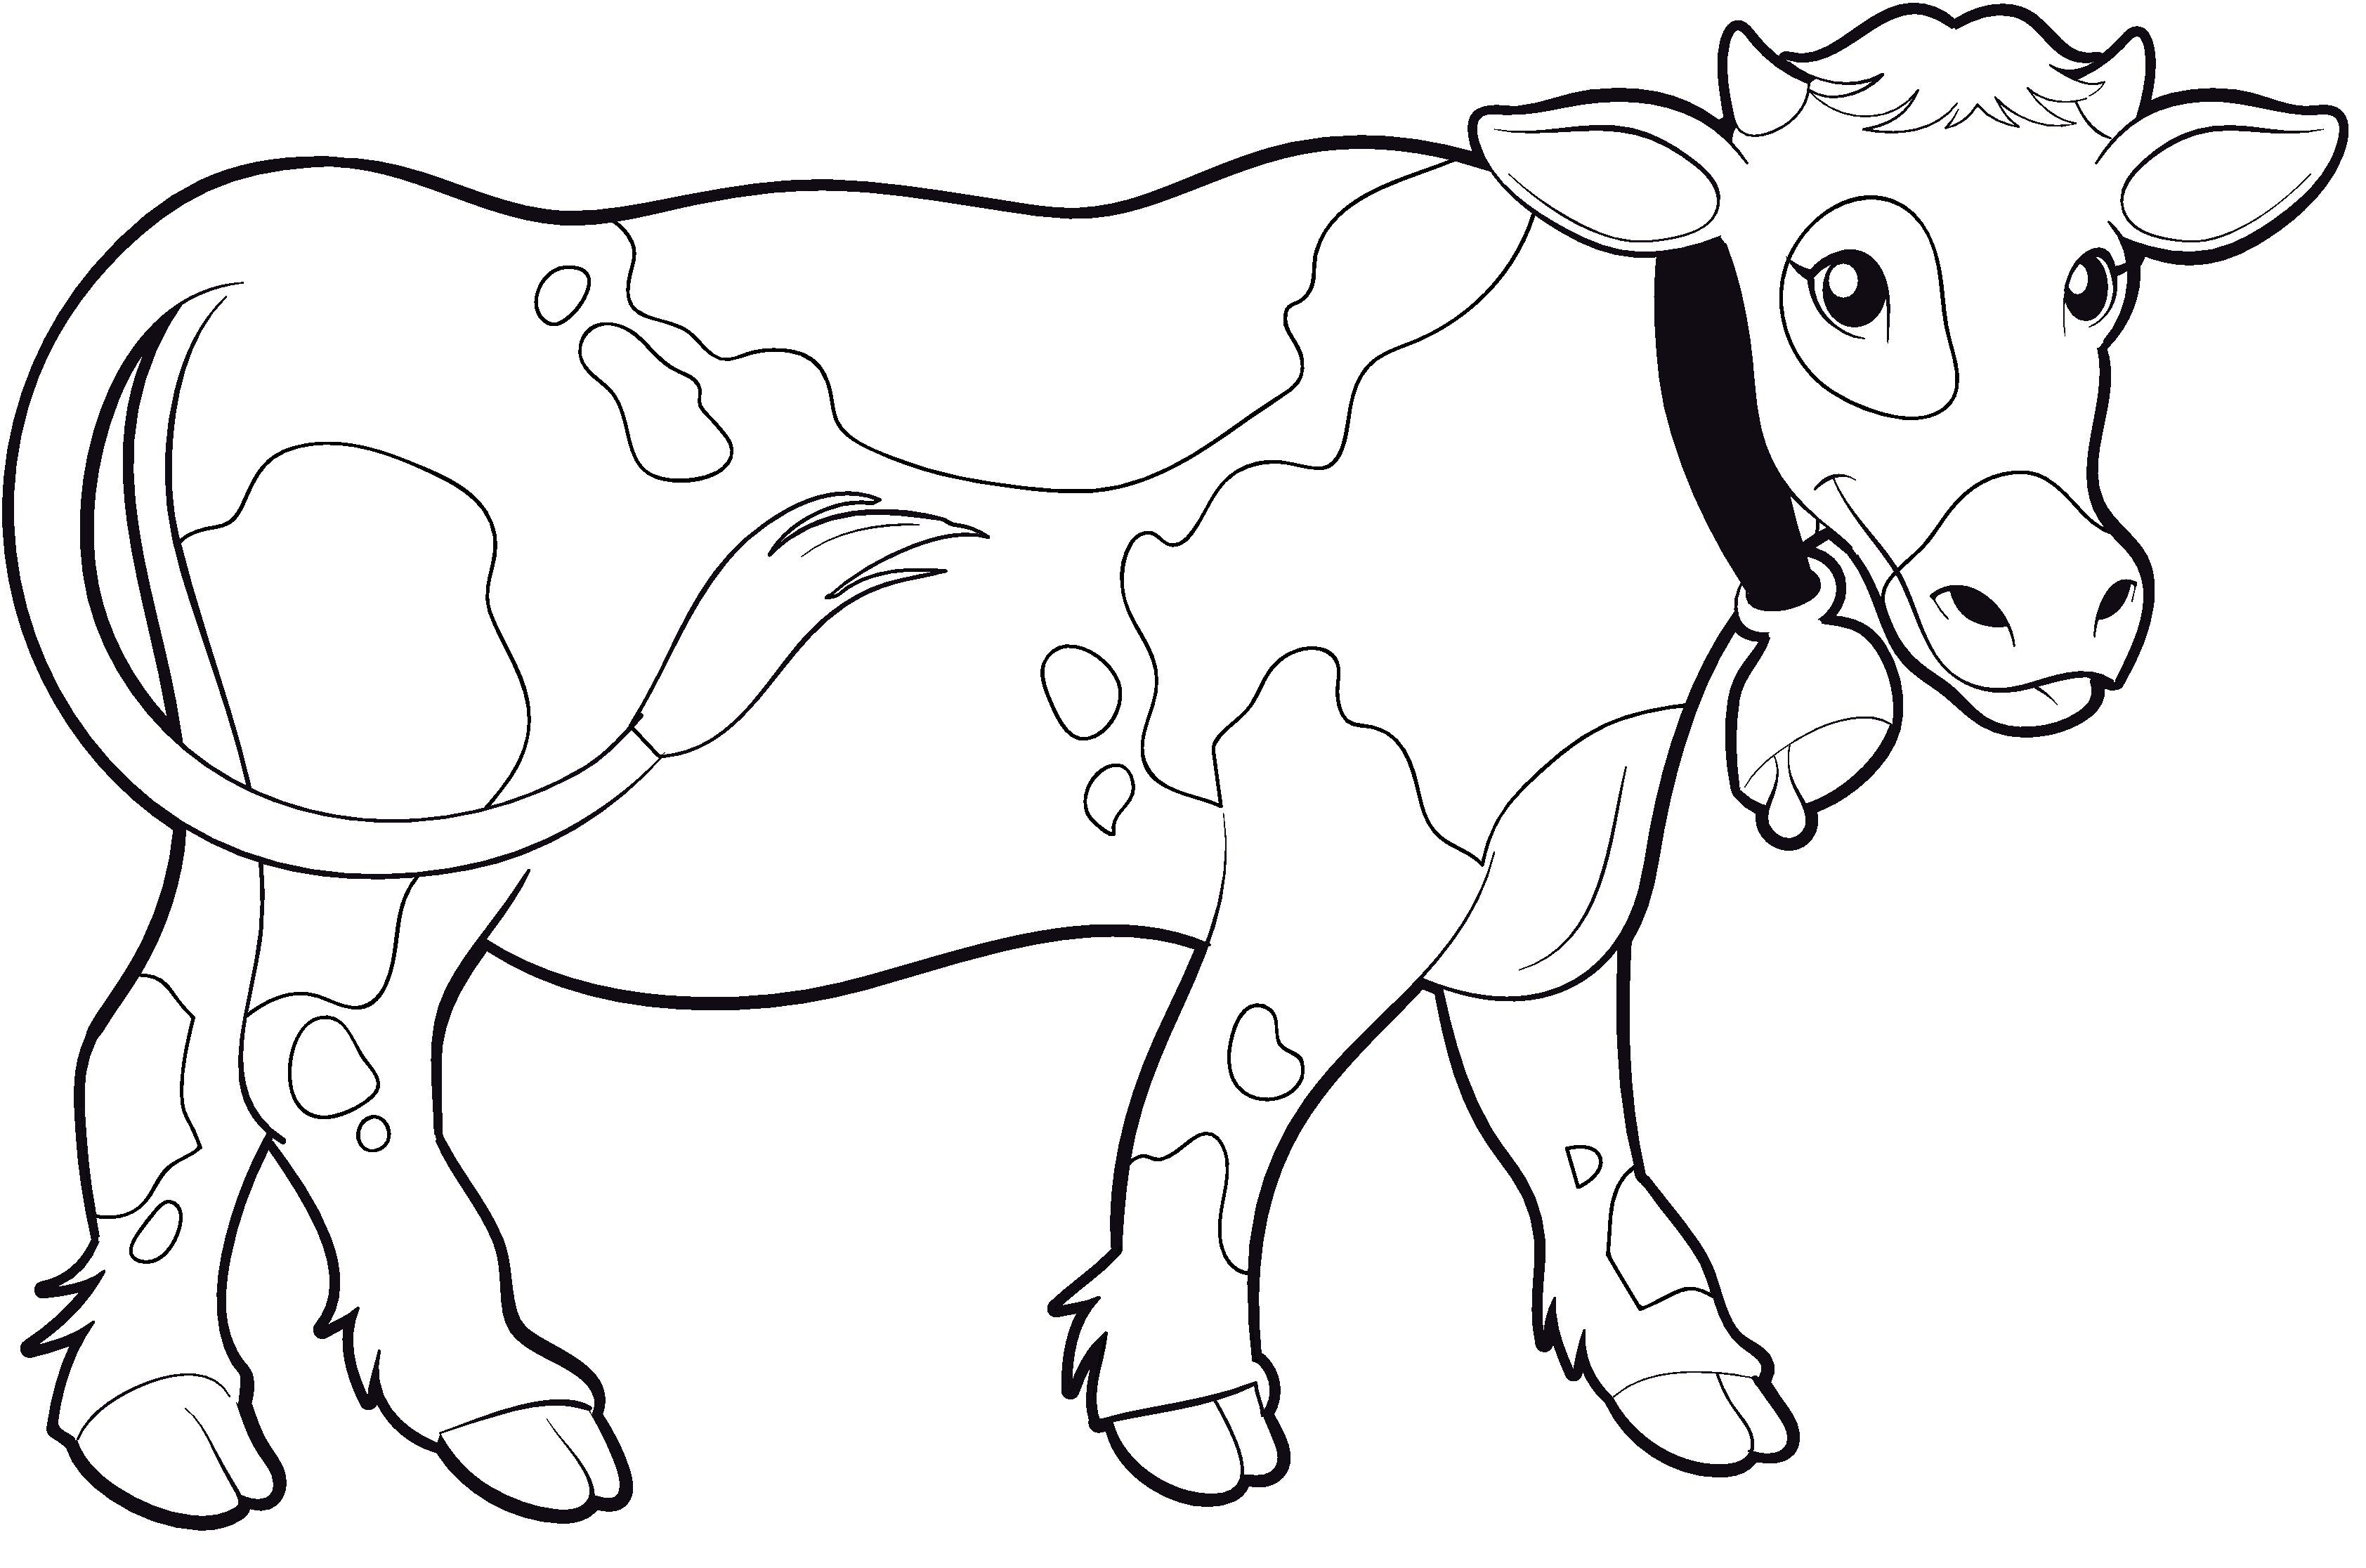 Раскрашивать коров. Раскраска корова. Корова раскраска для детей. Корова раскраска для малышей. Korova raskrazka dla detey.